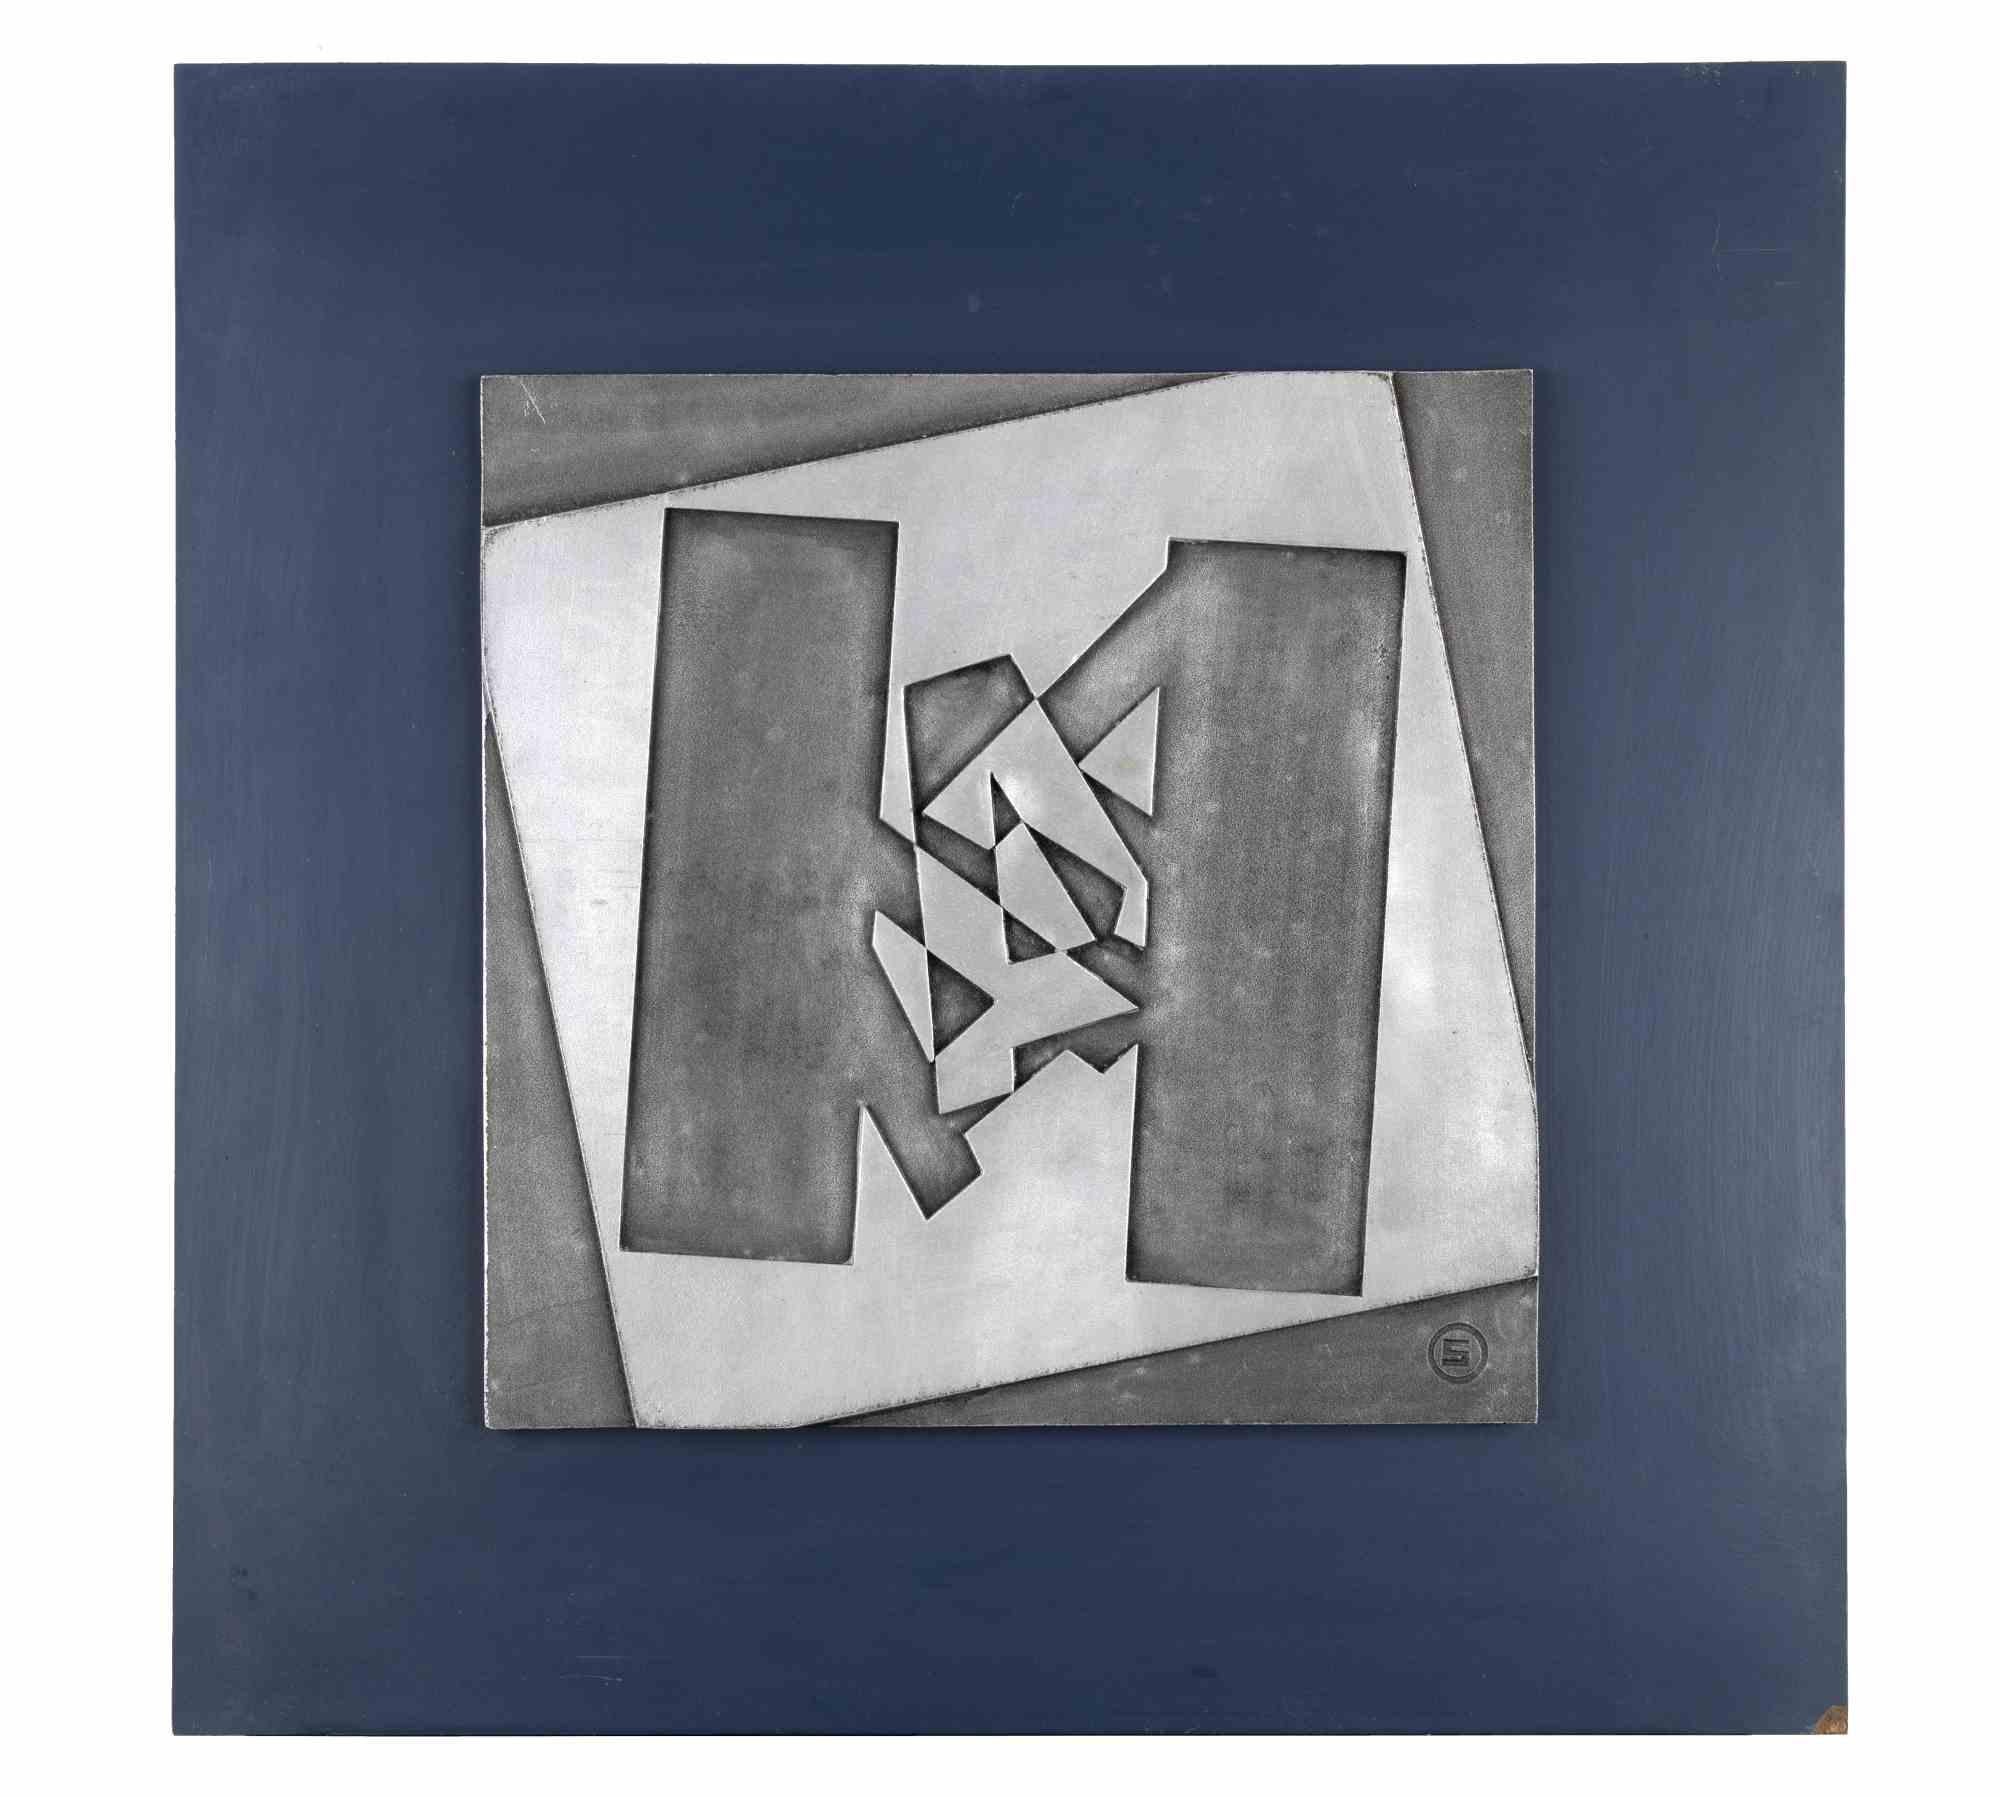 7542 ist ein Kunstwerk des italienischen Künstlers Renato Spagnoli (Livorno, 1928-Livorno, 2019) aus dem Jahr 1975.

Gemischte Medien

Rückseitig handsigniert, betitelt und datiert